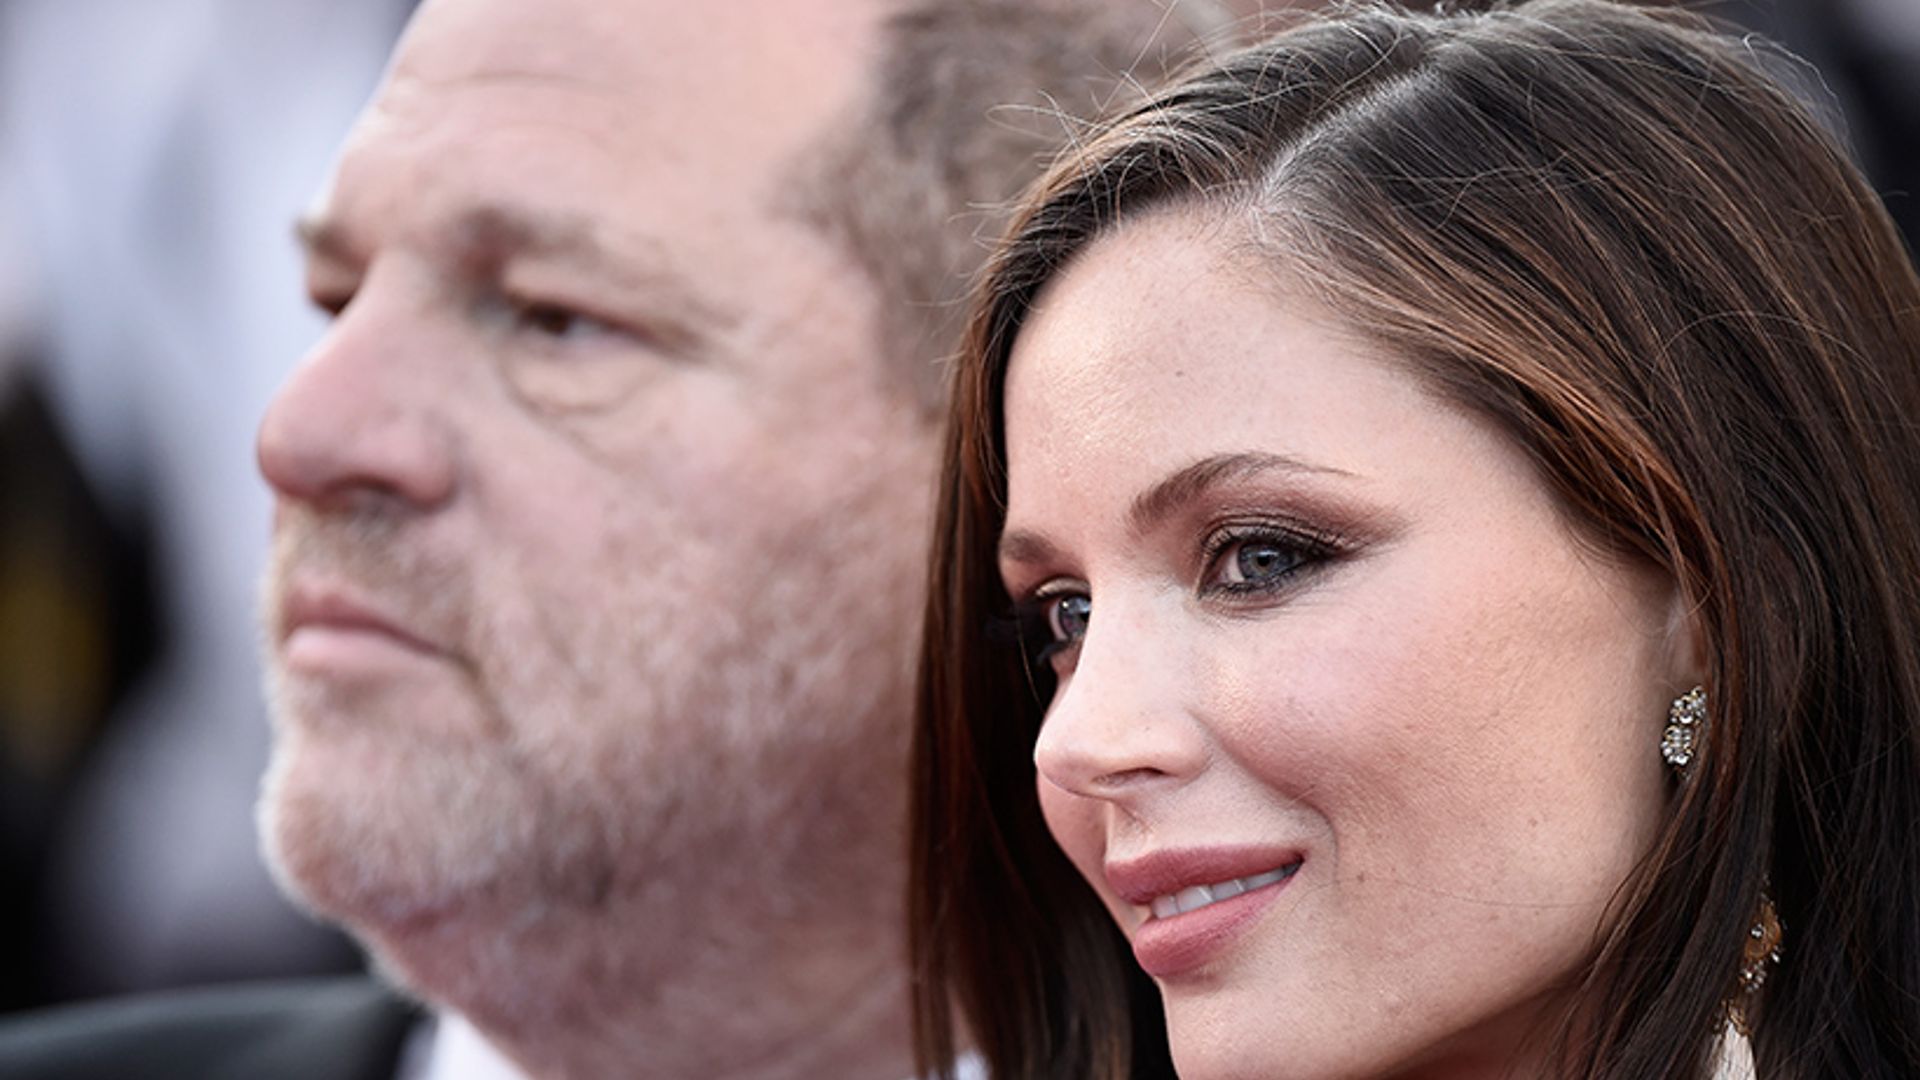 Harvey Weinstein reaches divorce settlement with wife Georgina Chapman